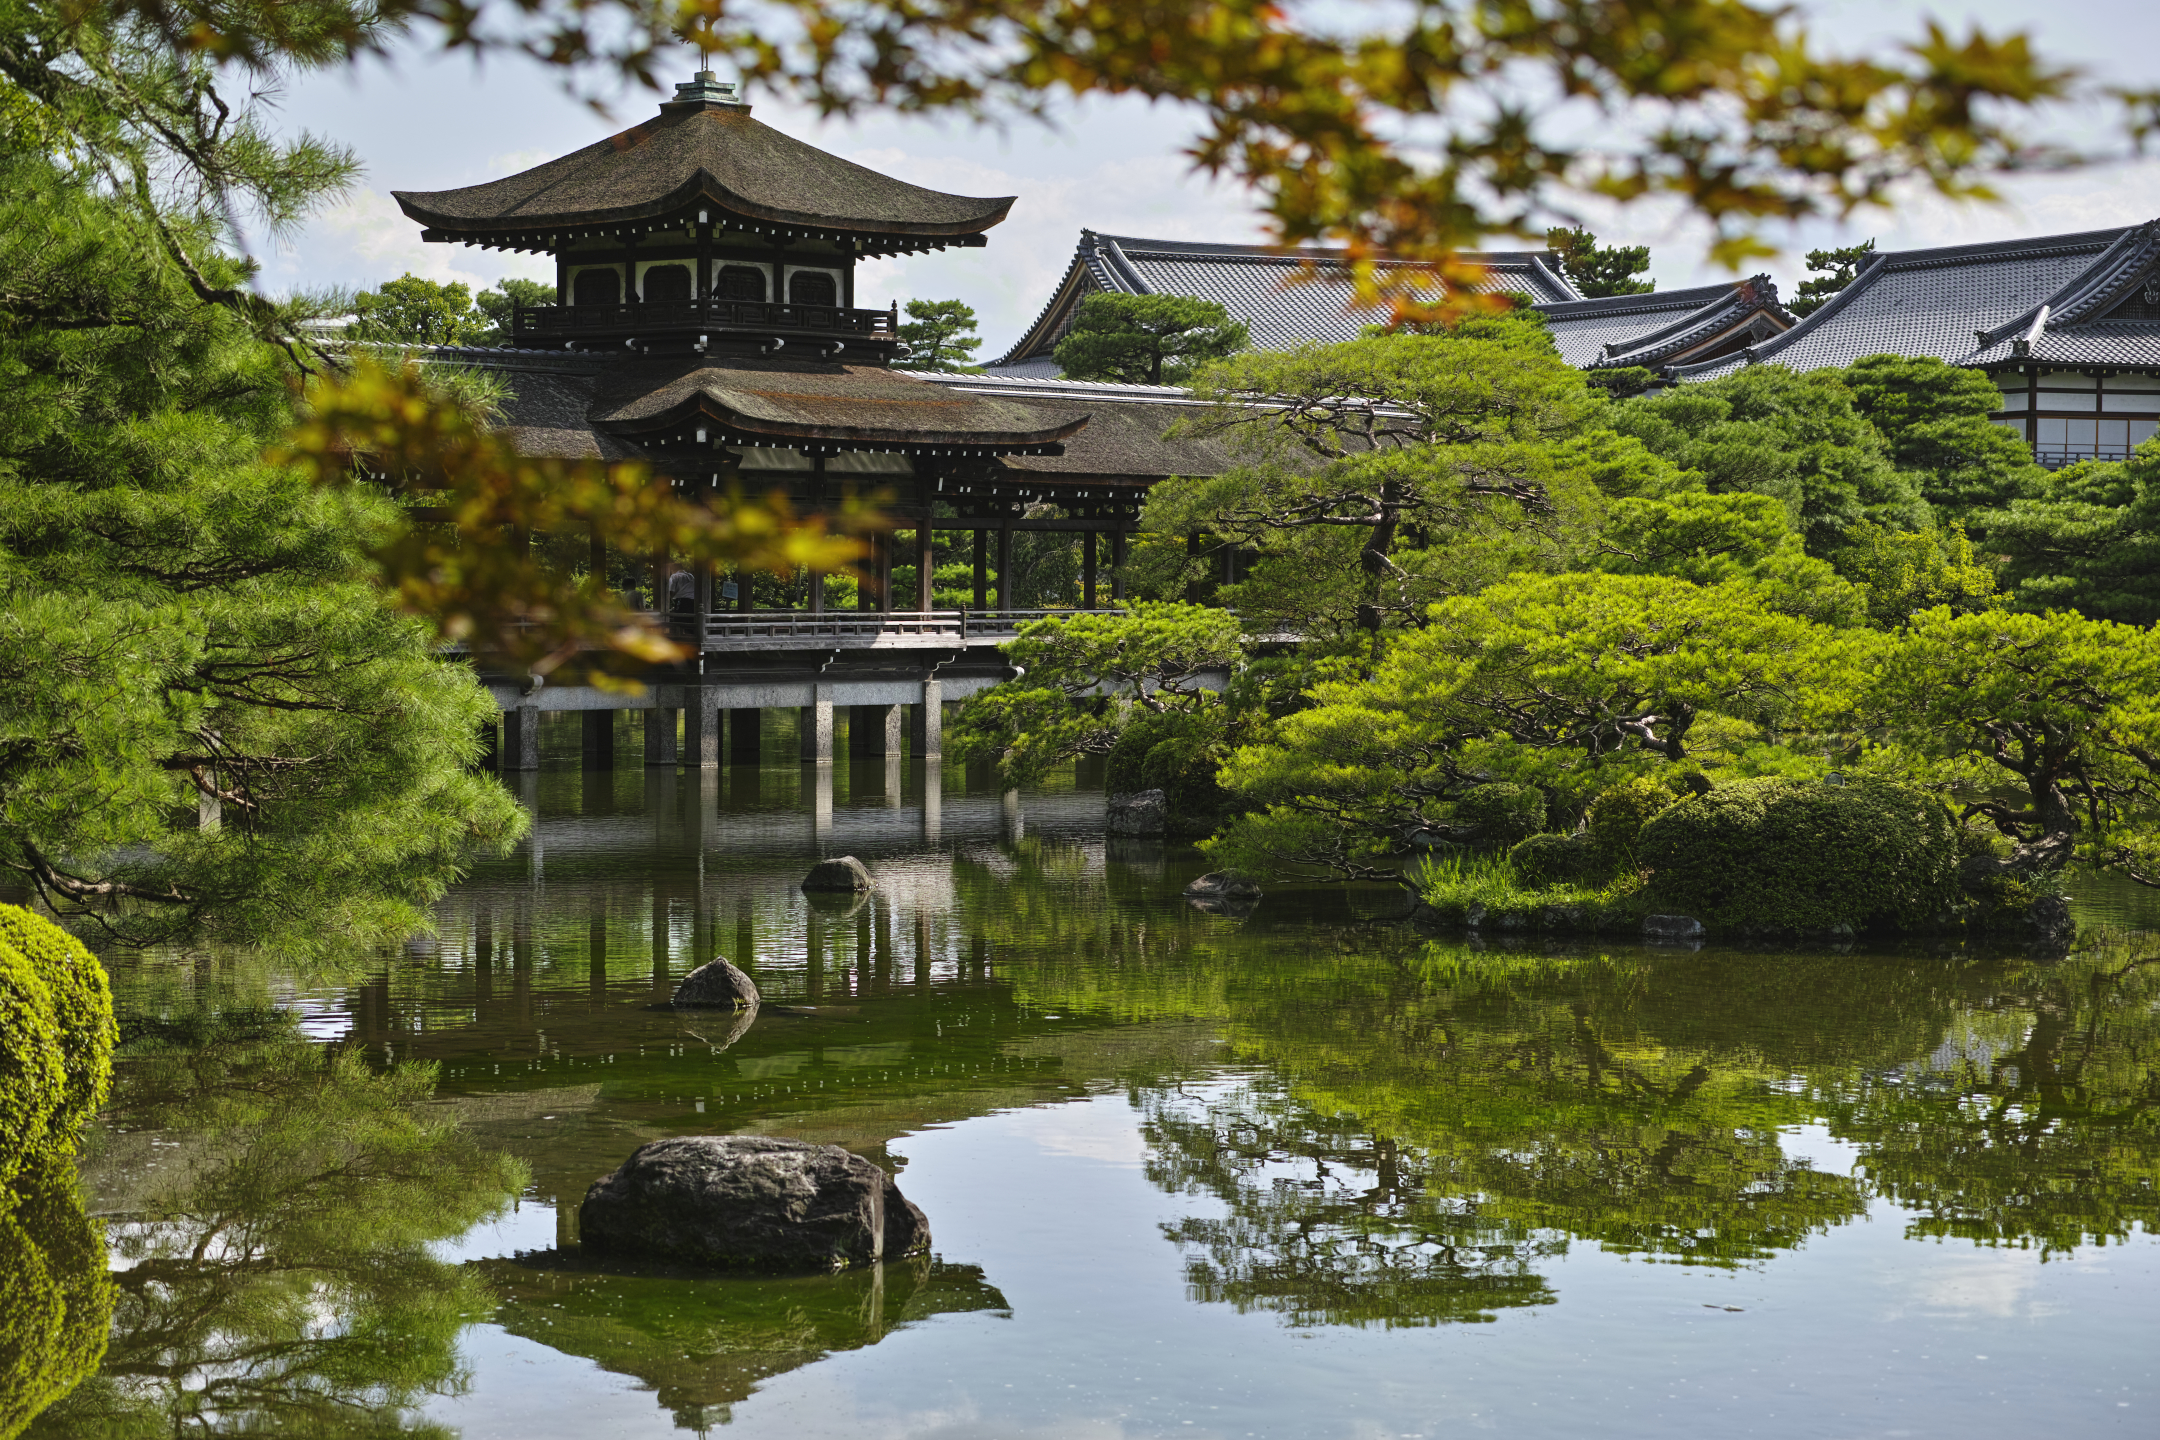 pagoda, pavilion, man made, kyoto, pond, garden, japan, cities